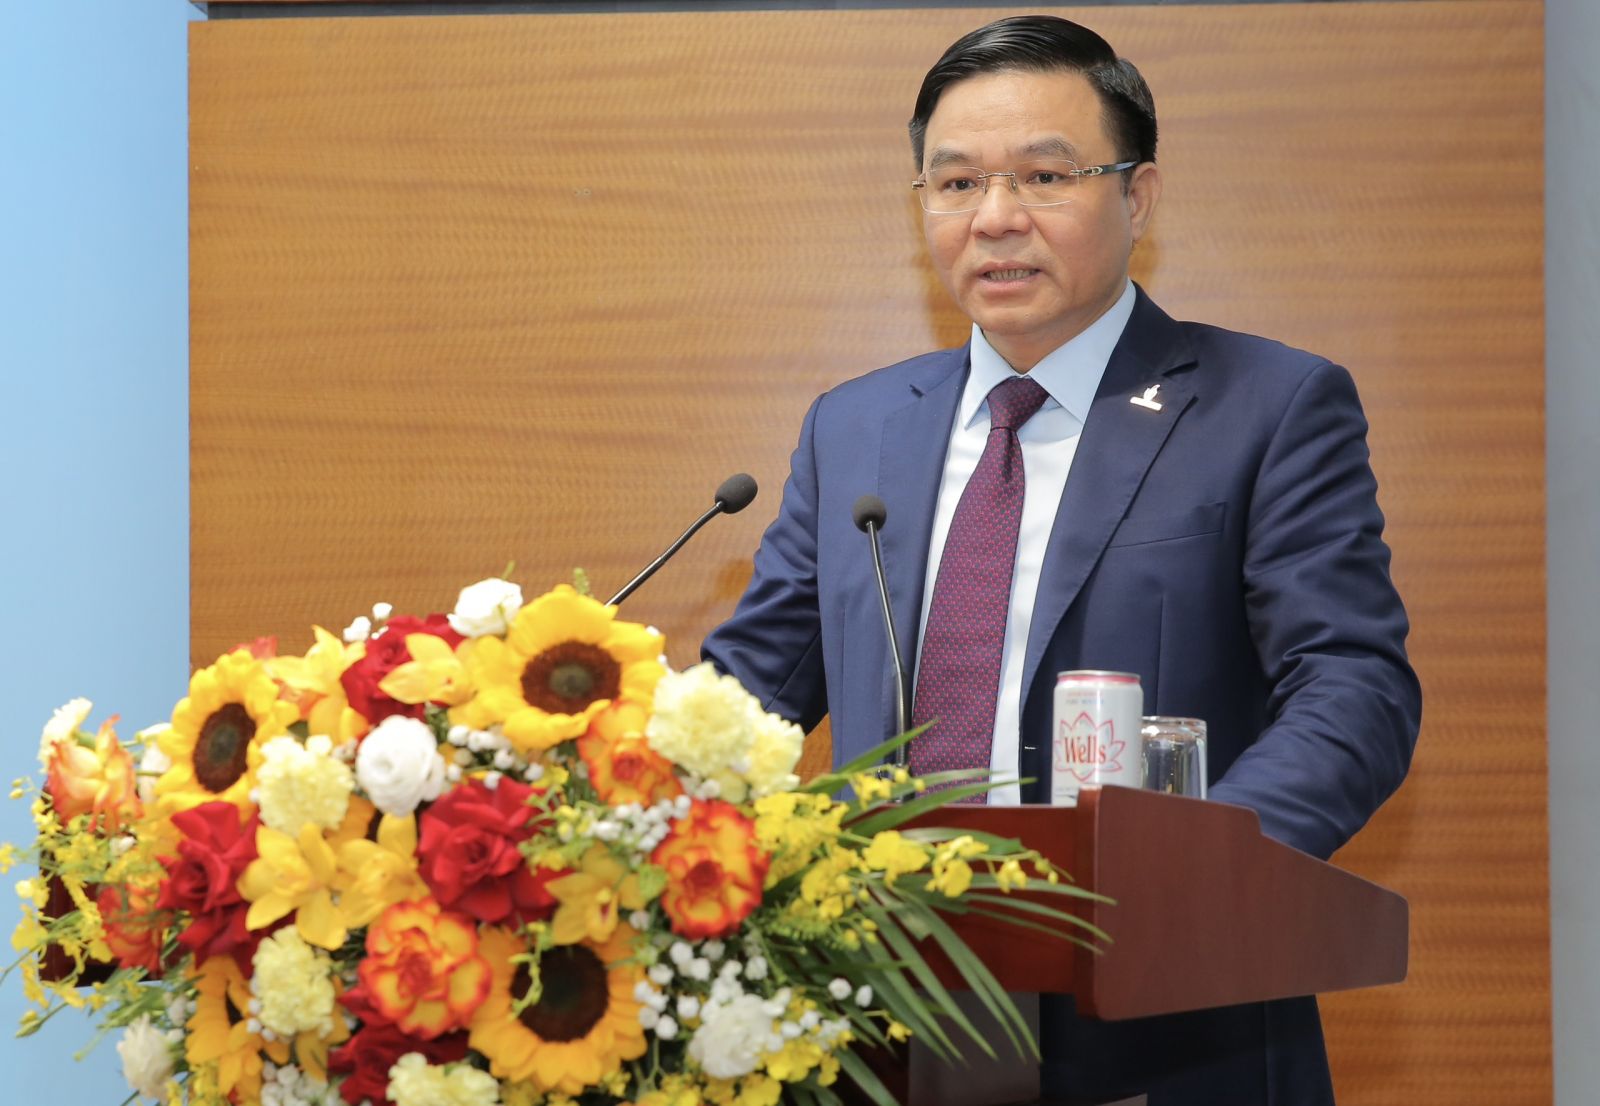 Đồng chí Lê Mạnh Hùng, Bí thư Đảng ủy, Chủ tịch HĐTV Petrovietnam phát biểu tại buổi lễ